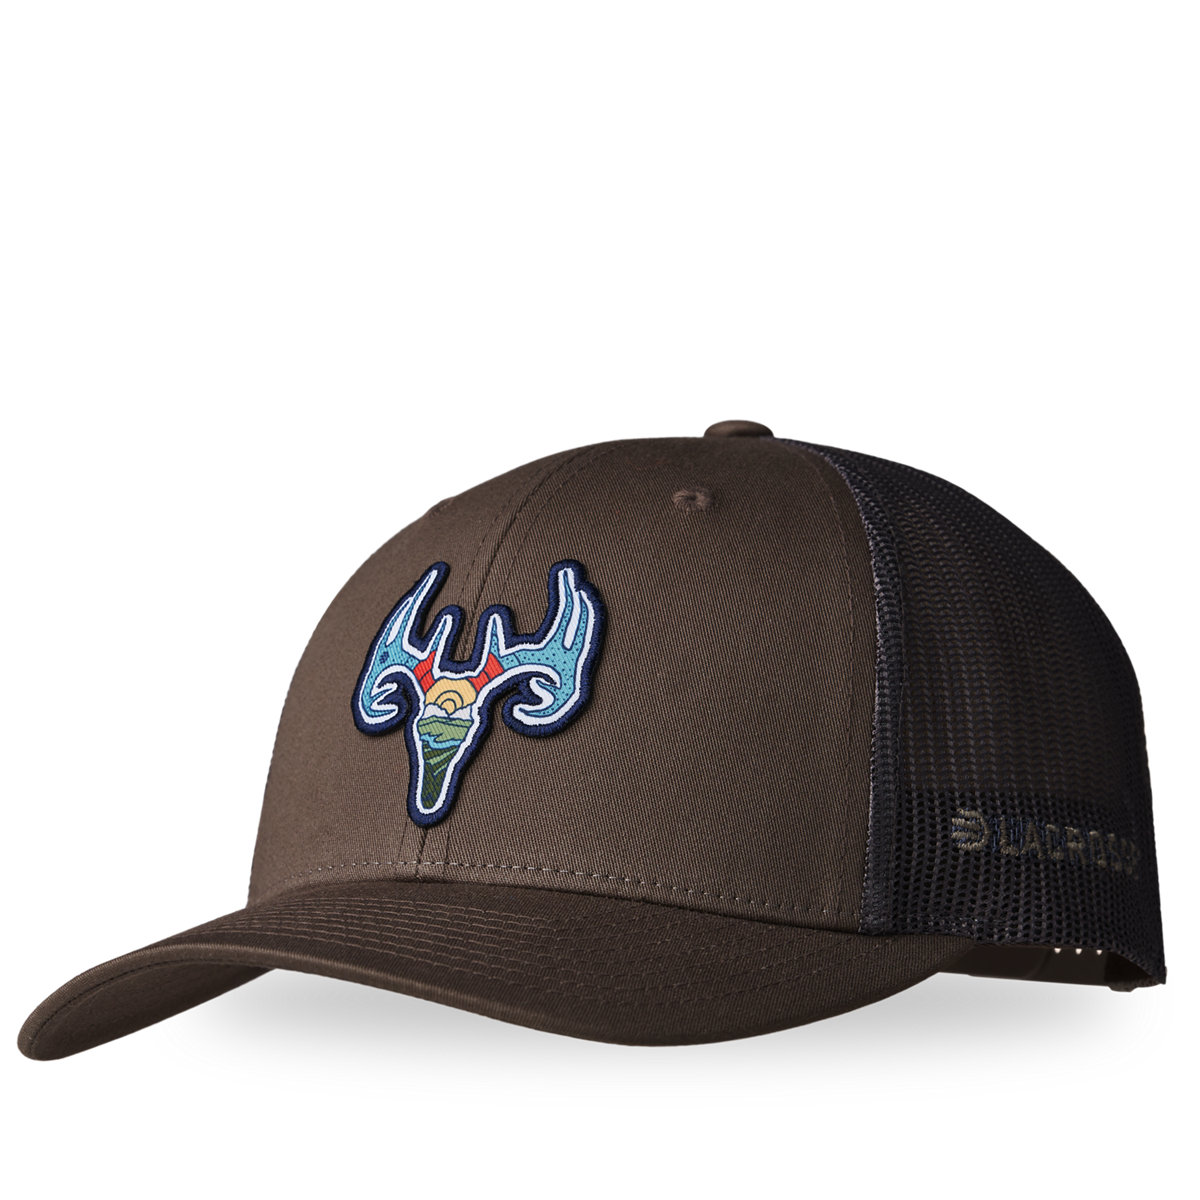 LaCrosse - Brown - Footwear Choc Hat Trucker Deer Chip/Grey LaCrosse